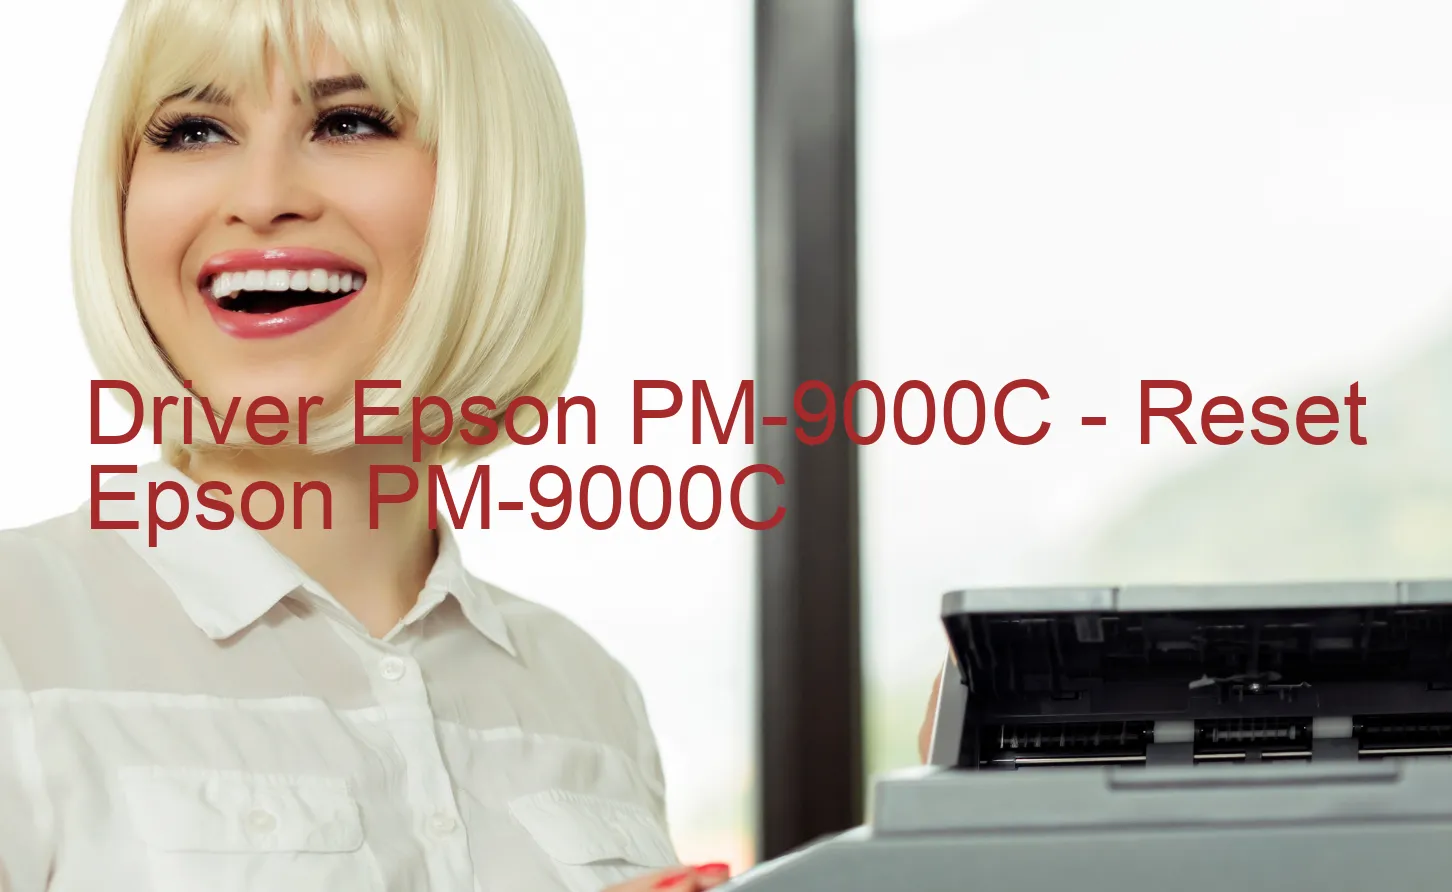 Epson PM-9000Cのドライバー、Epson PM-9000Cのリセットソフトウェア